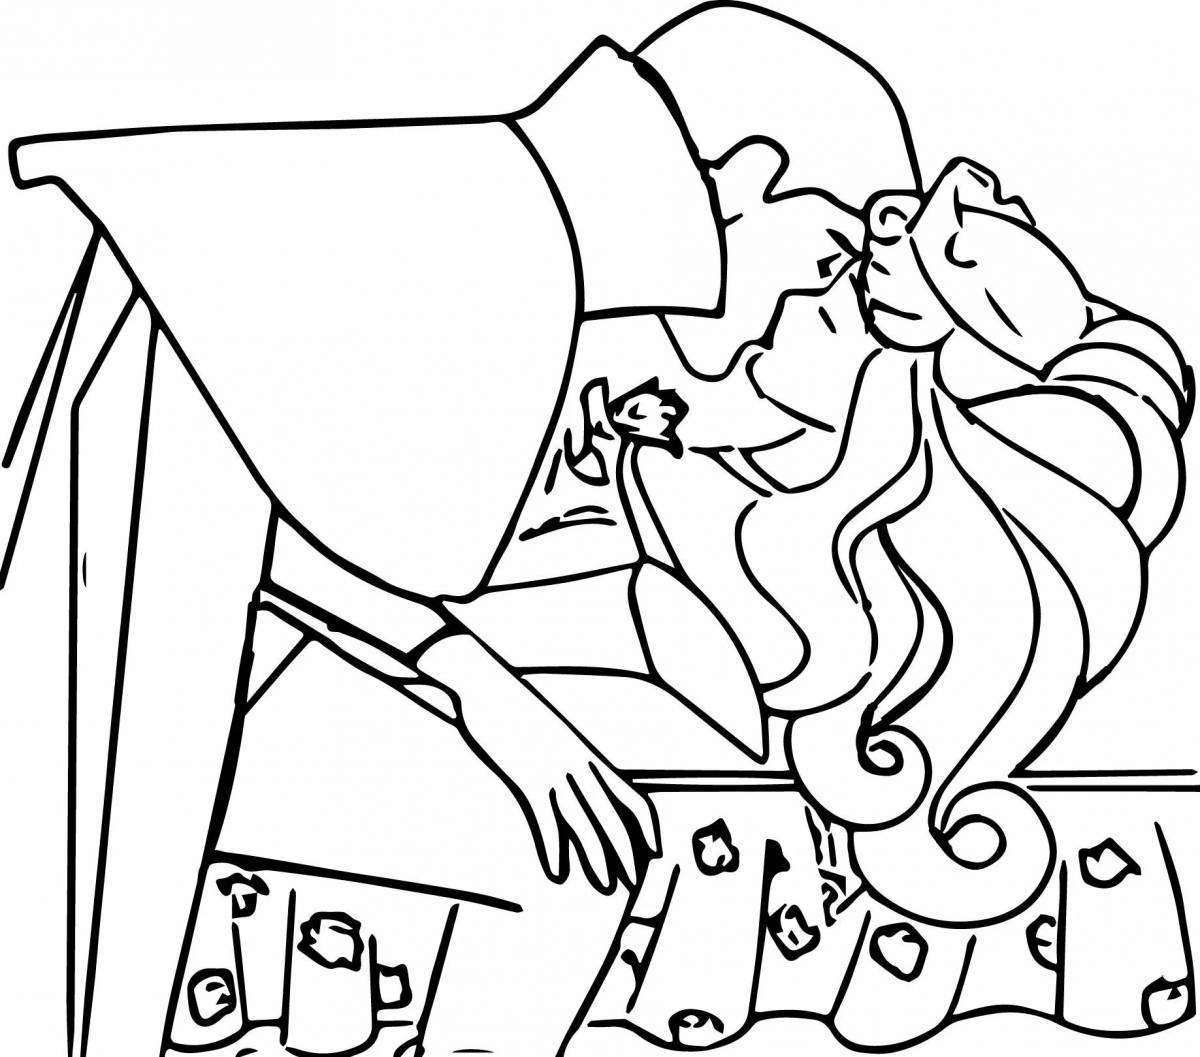 Charles Perrault Sleeping Beauty coloring book